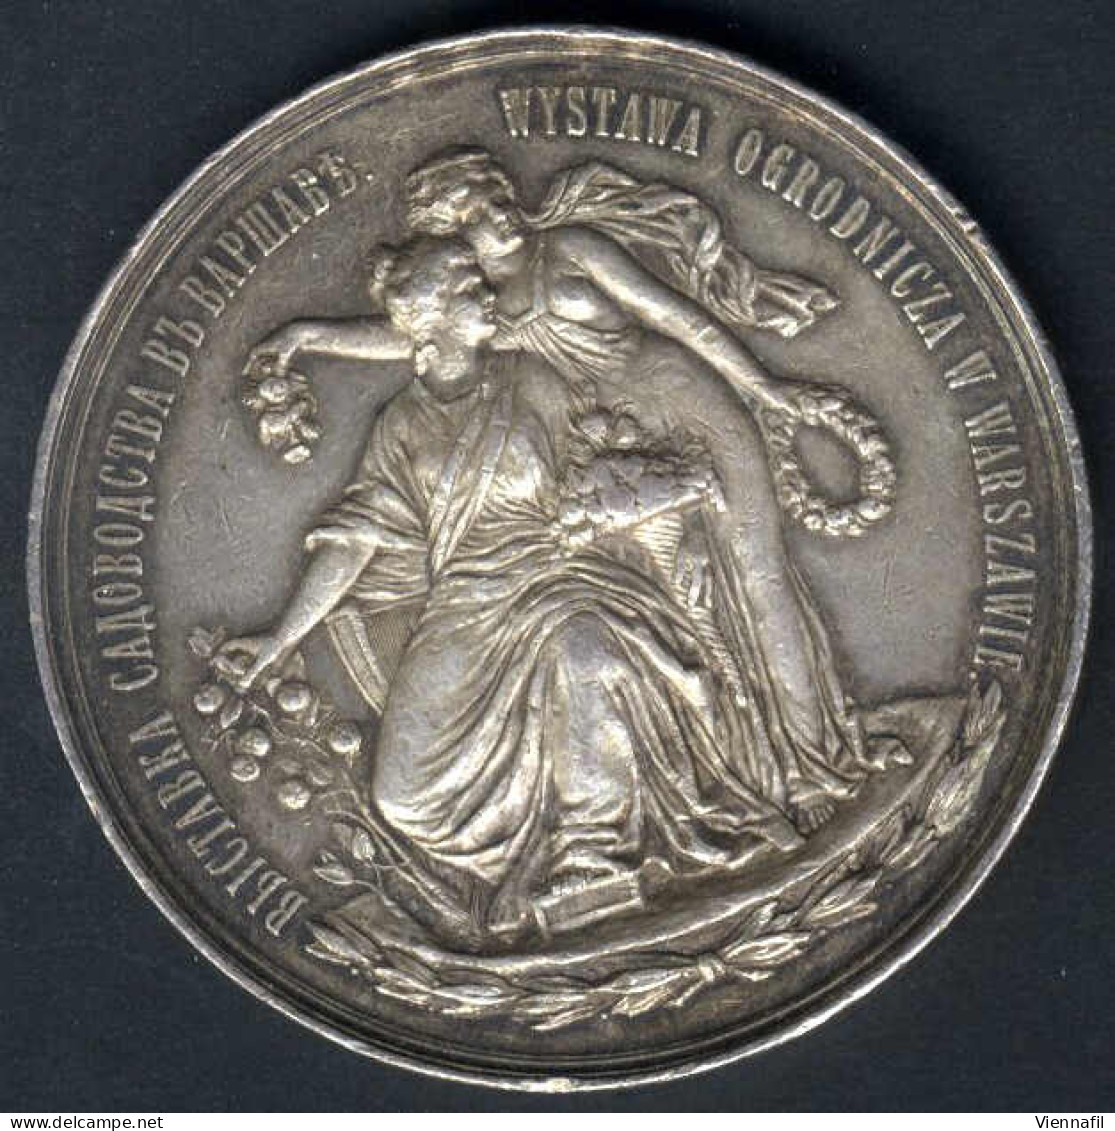 Medaille Der Warschauer Gartenbaugenossenschaft, Gartenbauausstellung Warschau 1895, Silbermedaille Von L. Steinman Für  - Poland